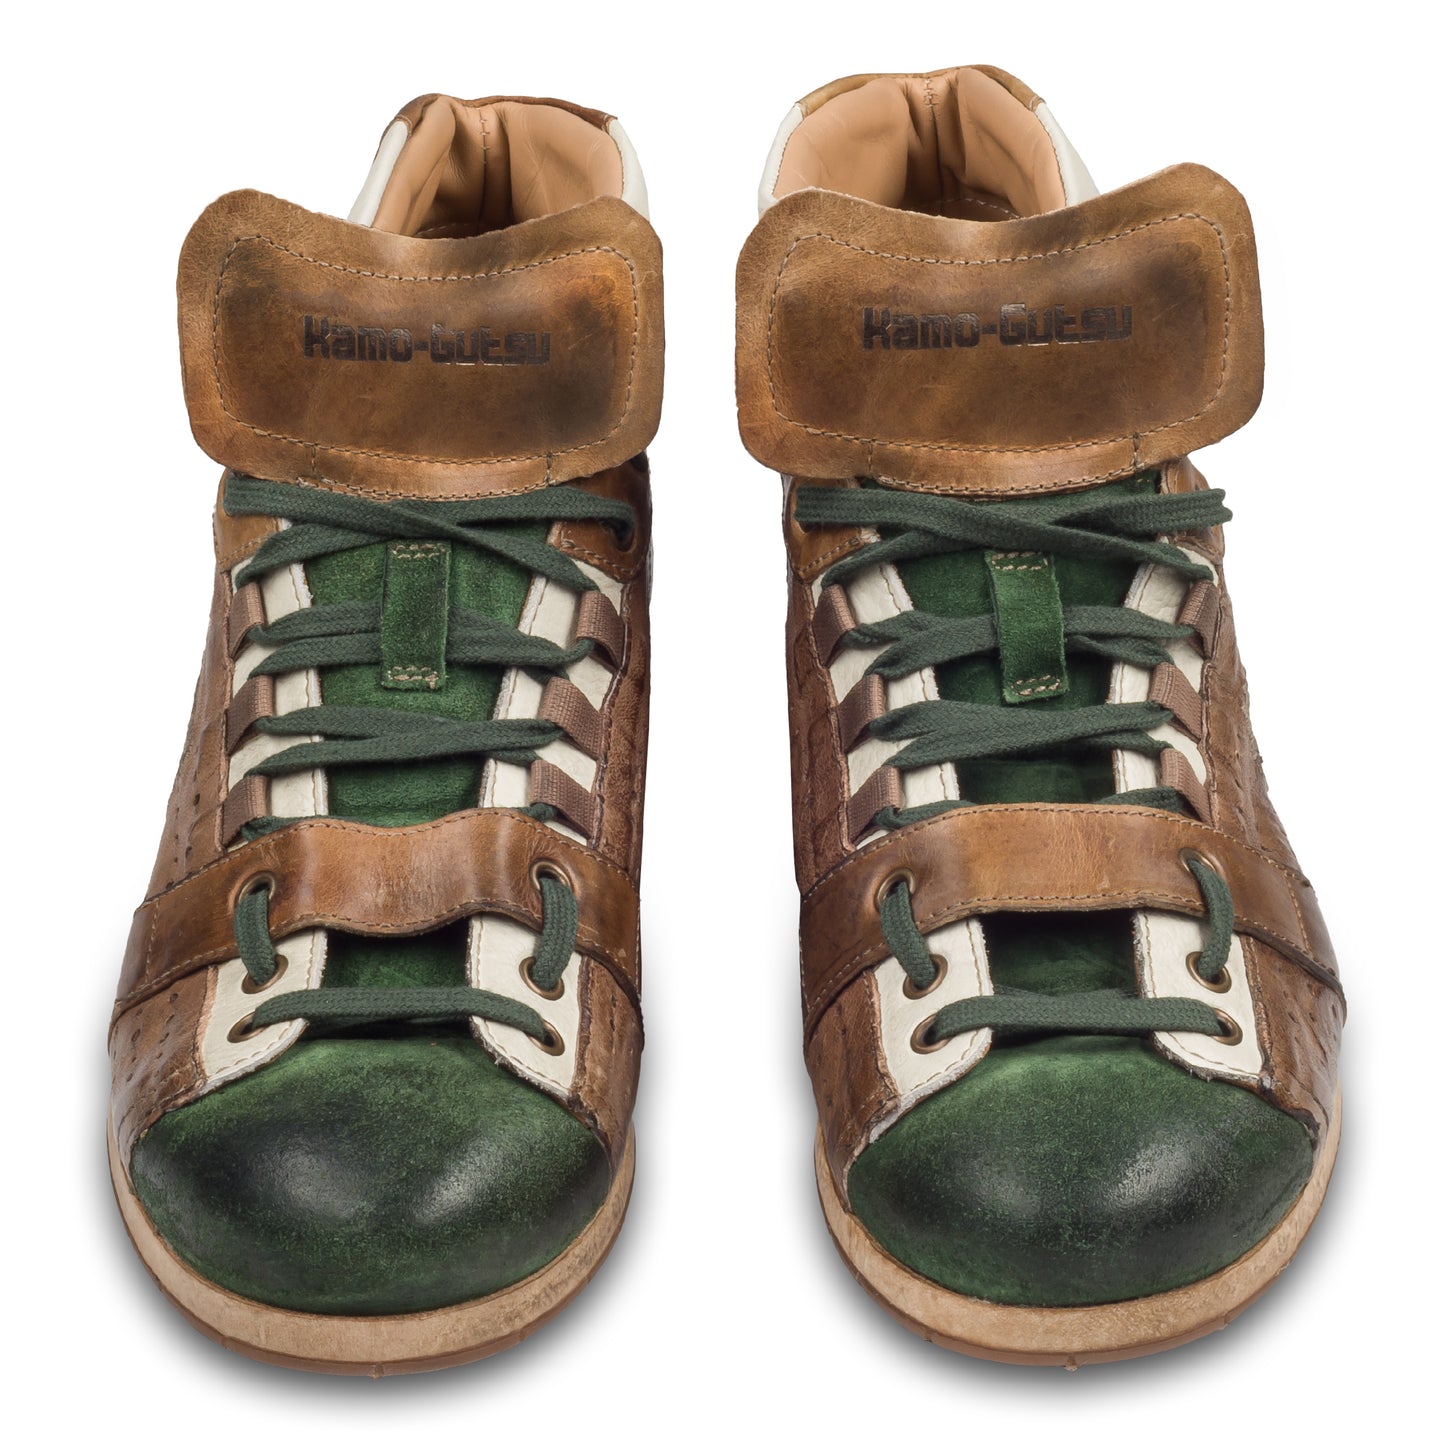 KAMO-GUTSU Italienische Herren Leder Sneaker Stiefel, braun/grün, Retro-Optik, High-Top, Modell TIFO-105 verde / taupe, Handgefertigt in Italien. Handgefertigt. Paarweise Ansicht von vorne.